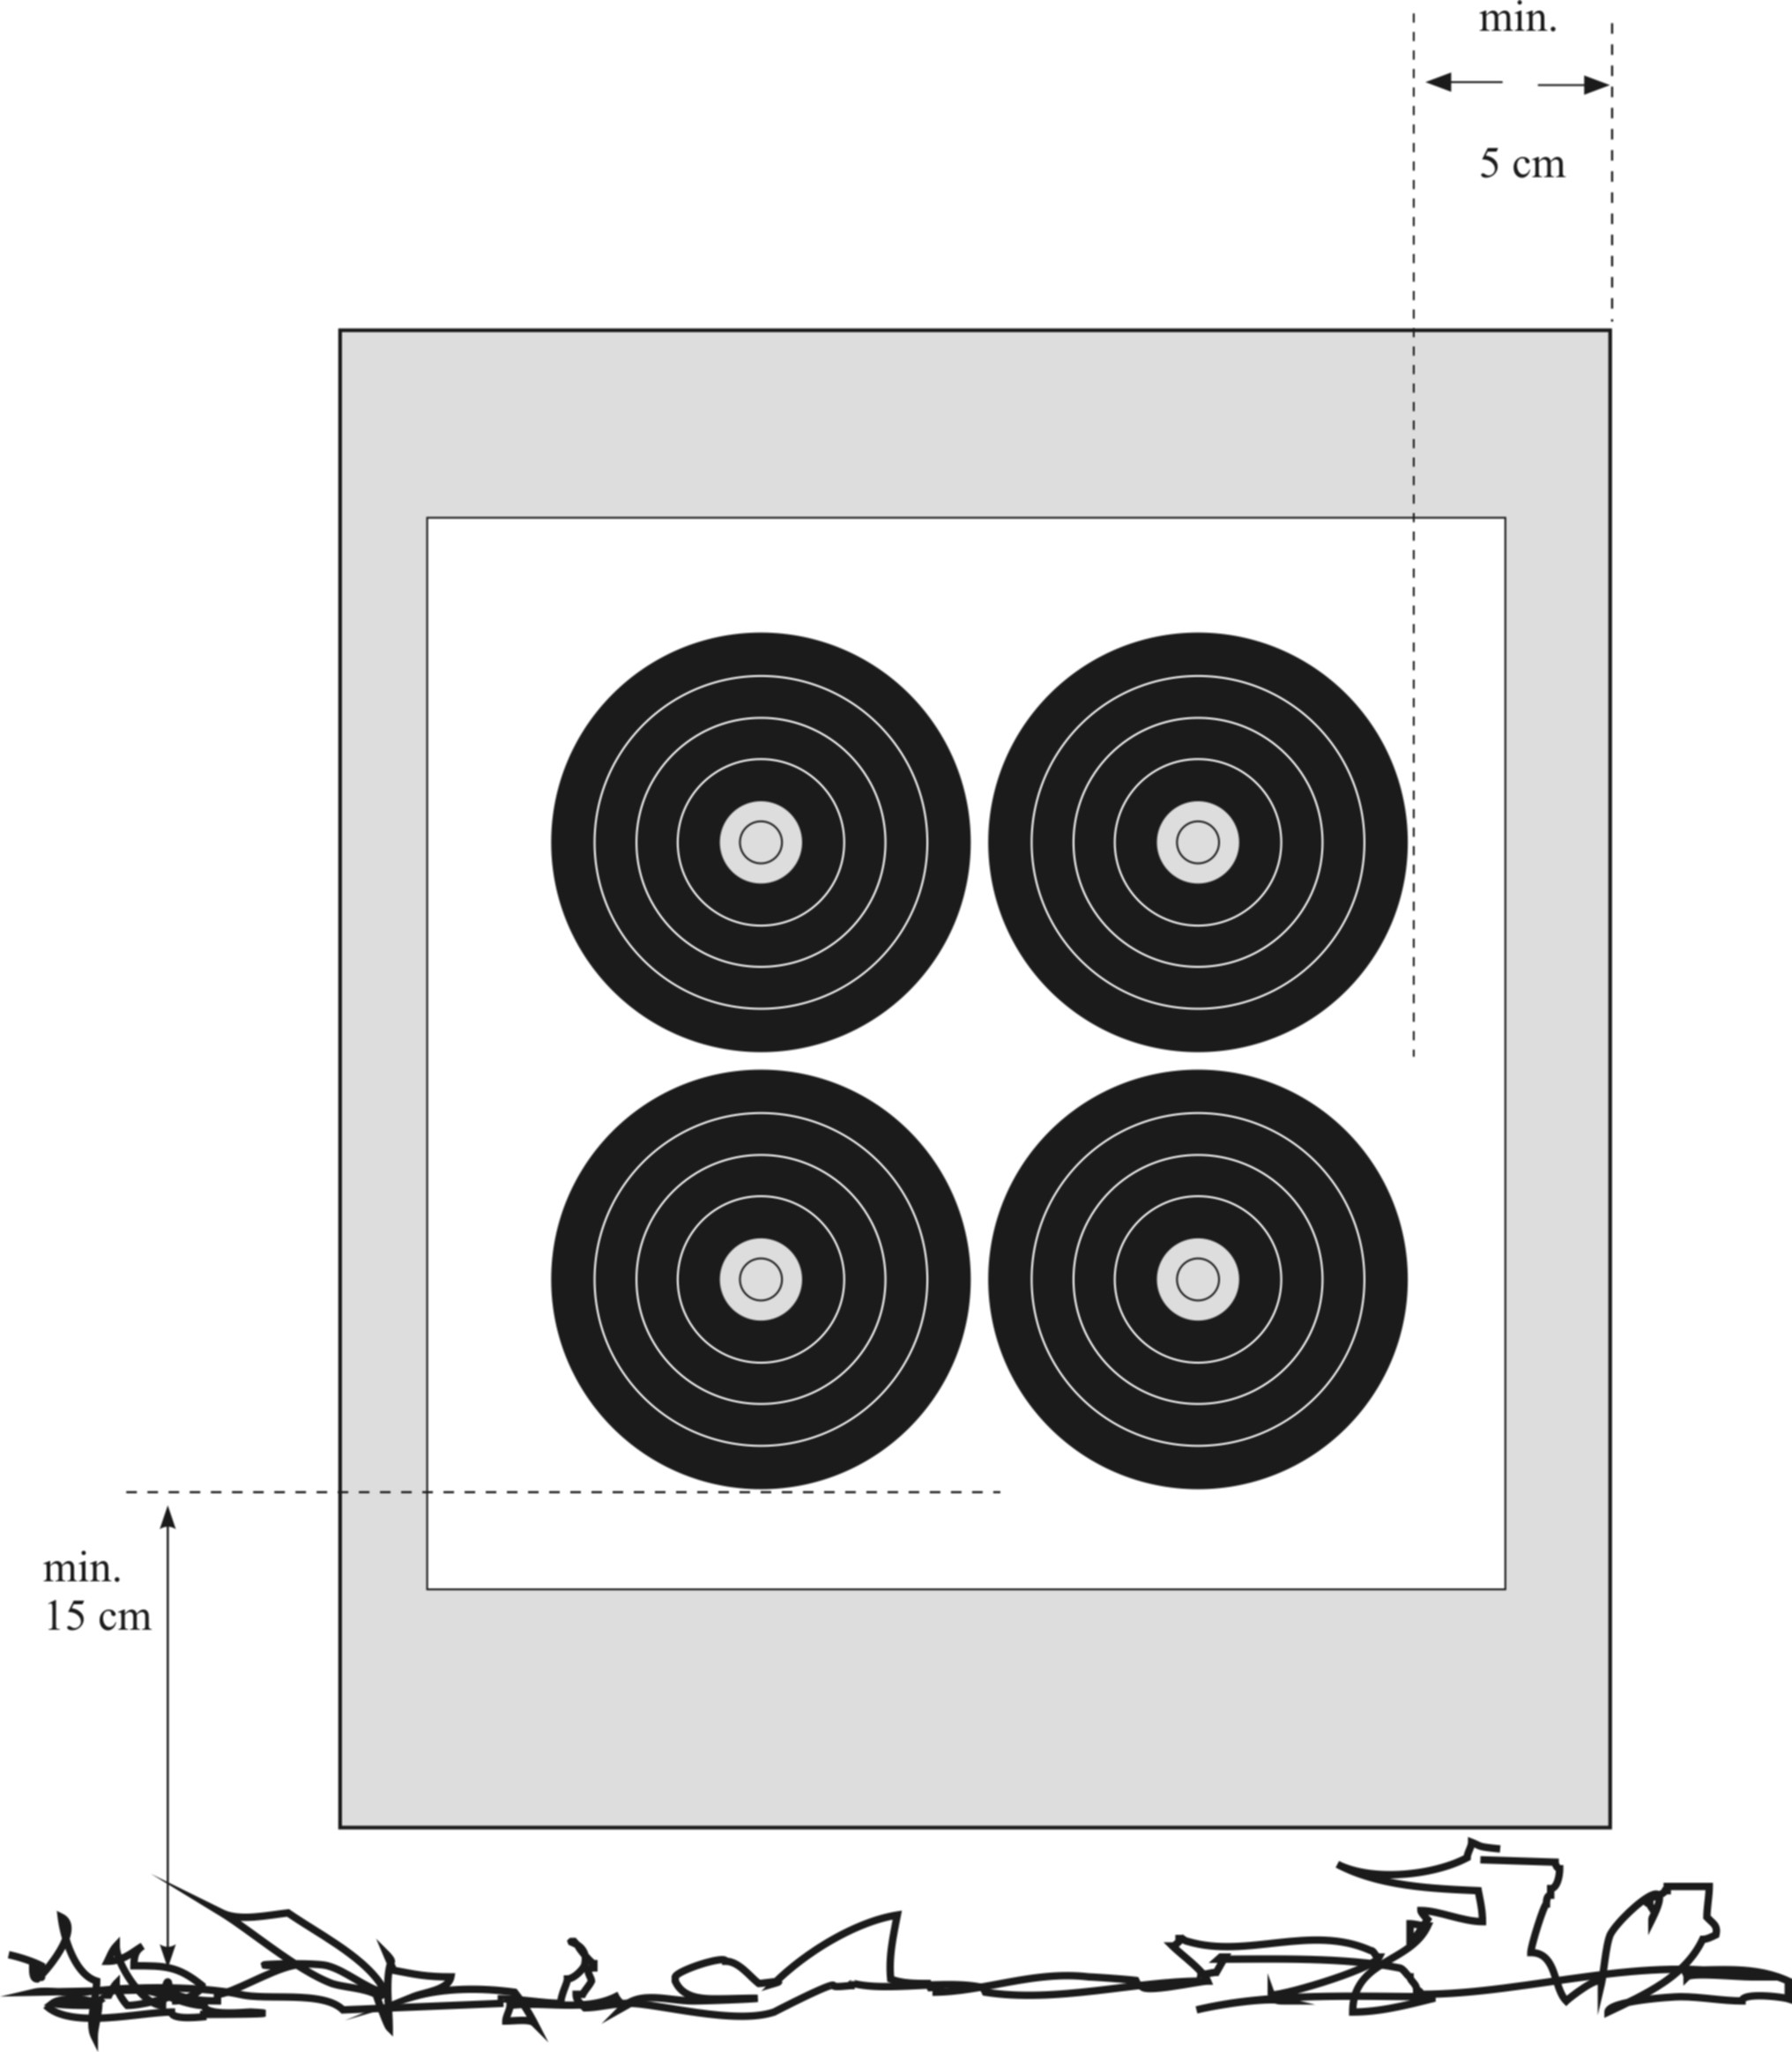 Image 3: 4 x 4 40cm Target Face for Field 4 x 3 verticaal drievoudig